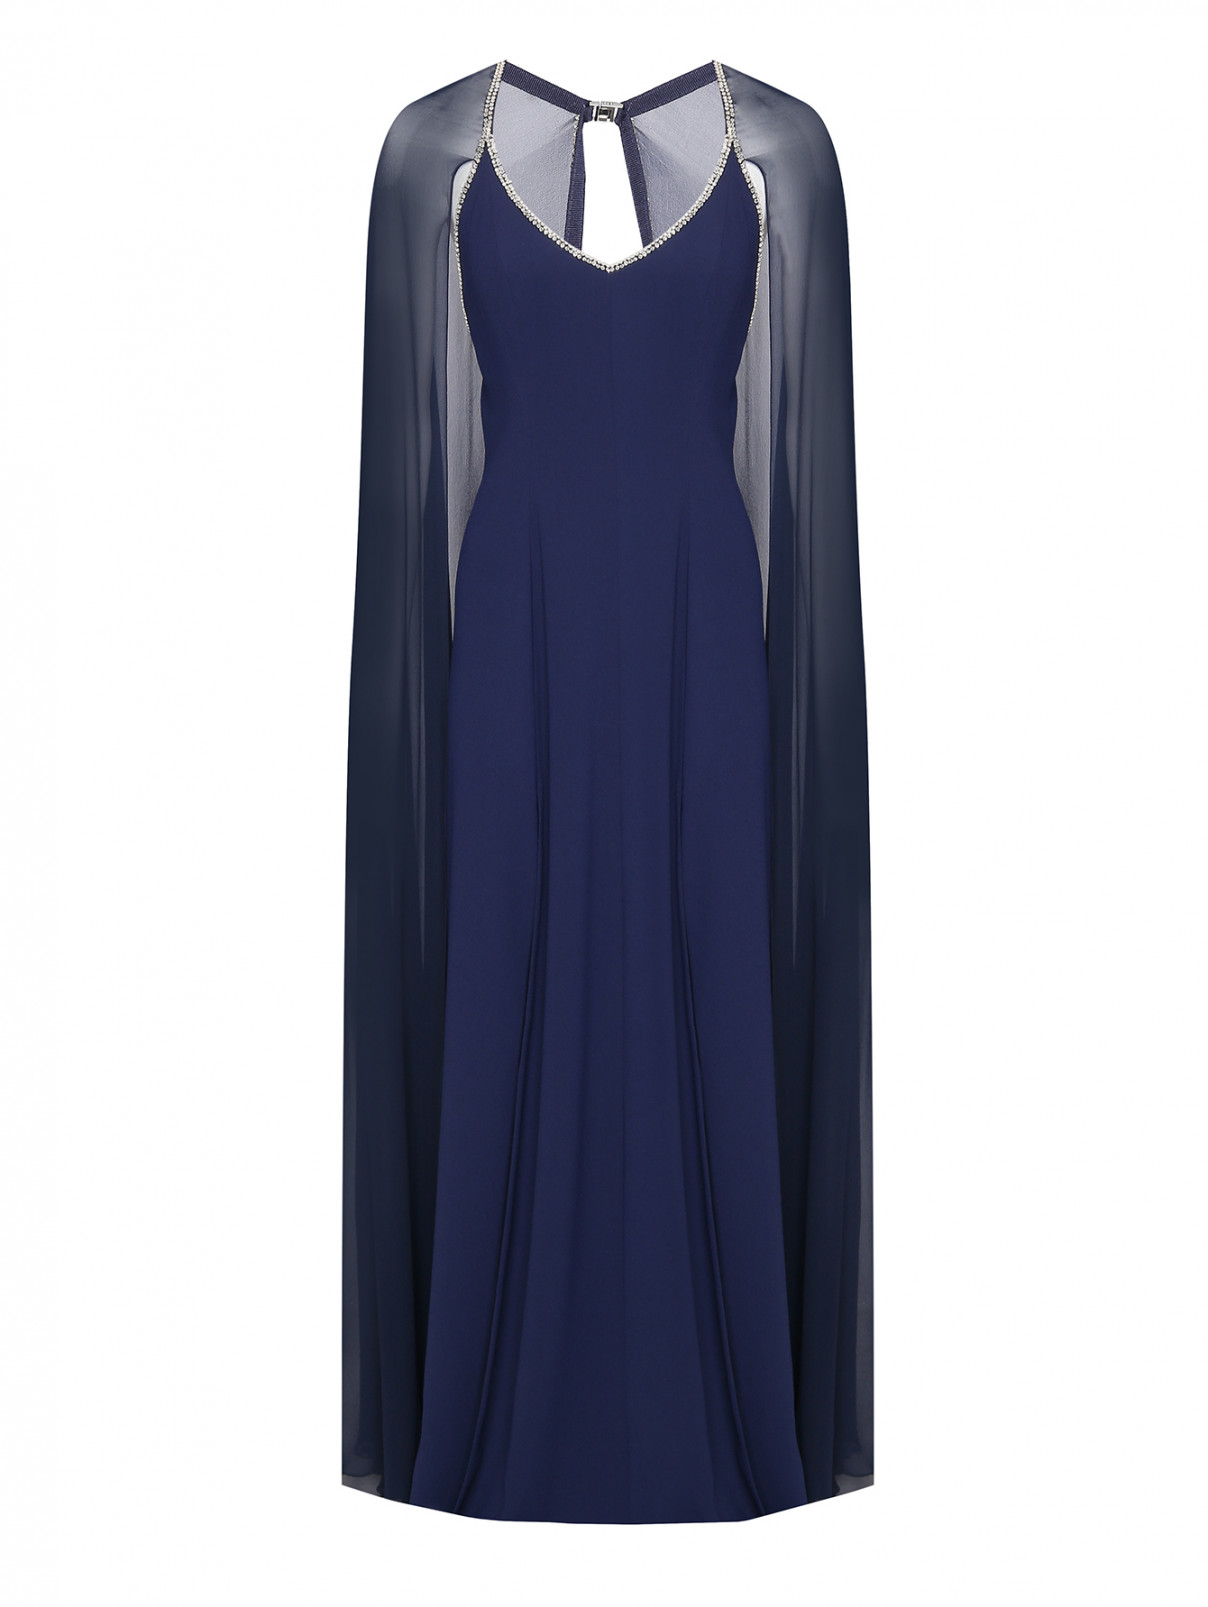 Платье-макси, декорированное кристаллами Jenny Packham  –  Общий вид  – Цвет:  Синий